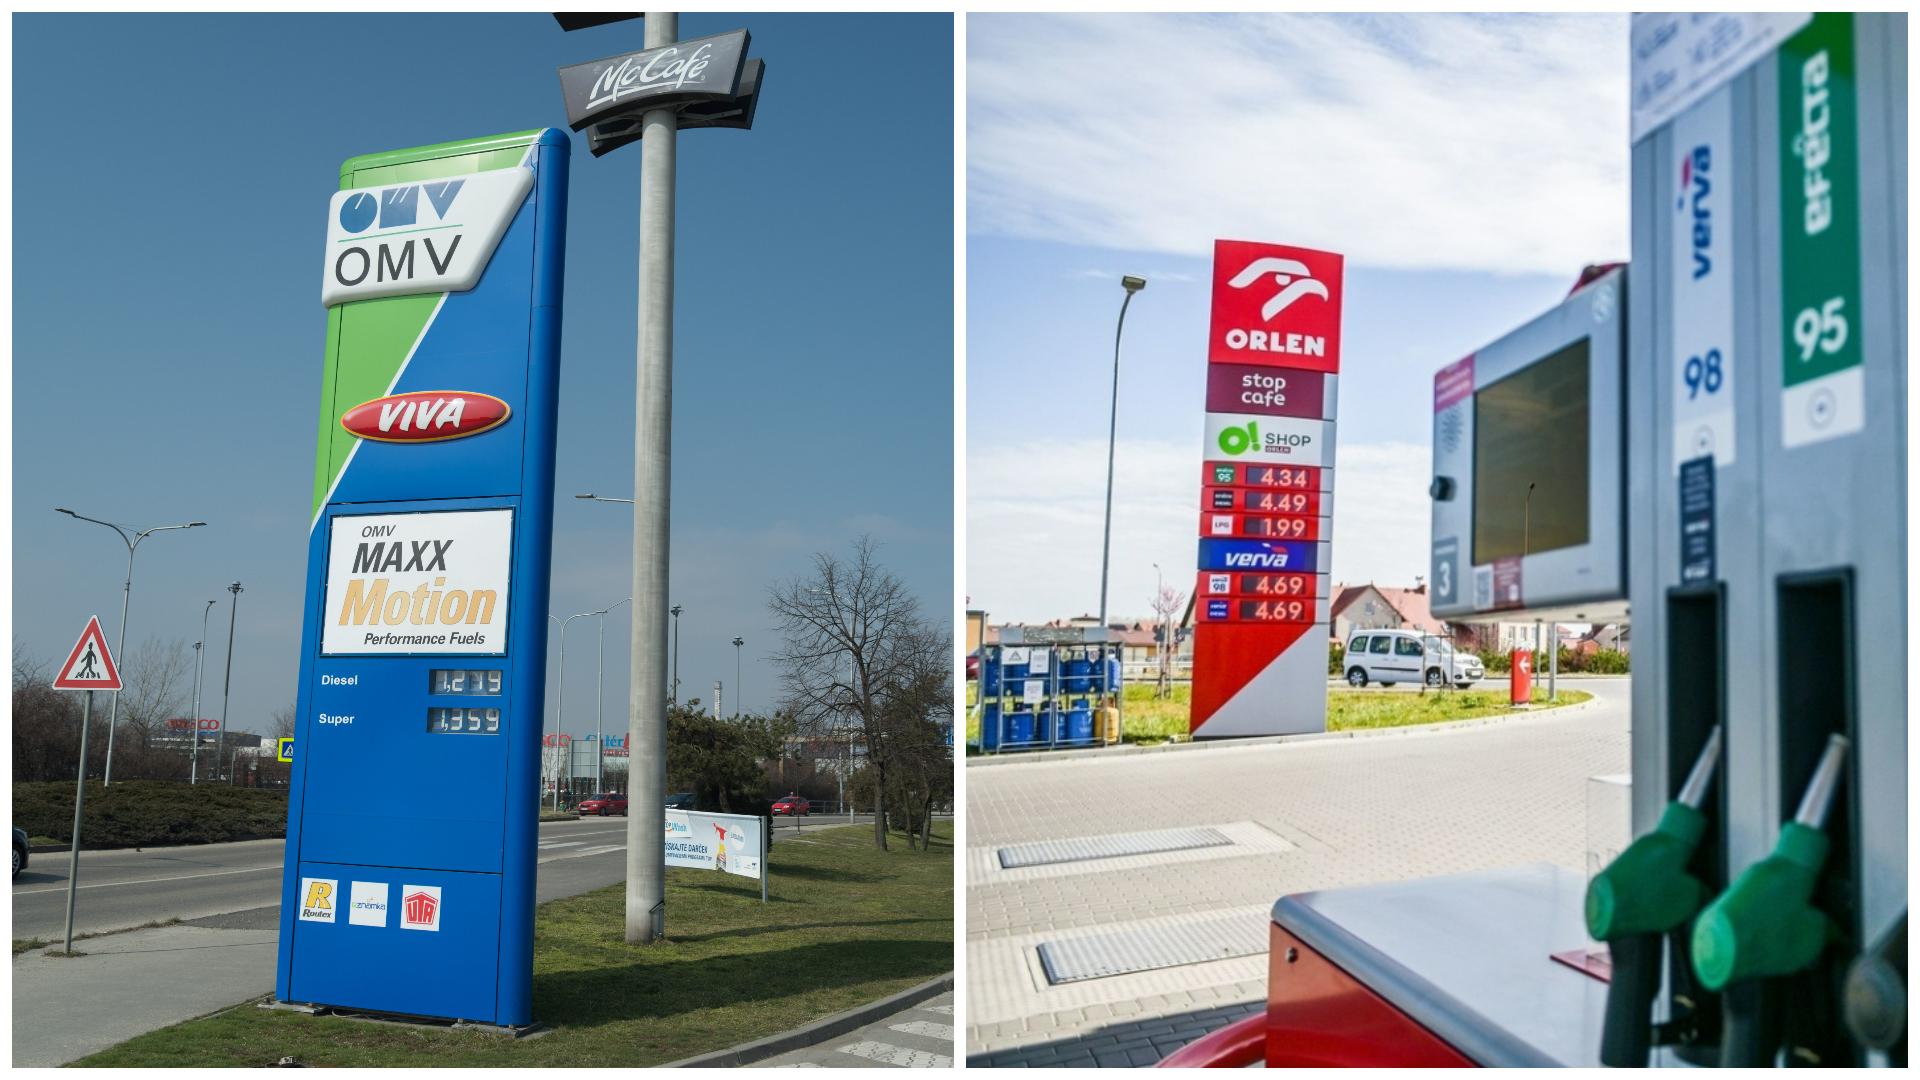 Bitka o slovenskú palivovú dvojku. OMV kúpil pumpy upadajúceho trpaslíka a odrazil útok poľského Orlenu